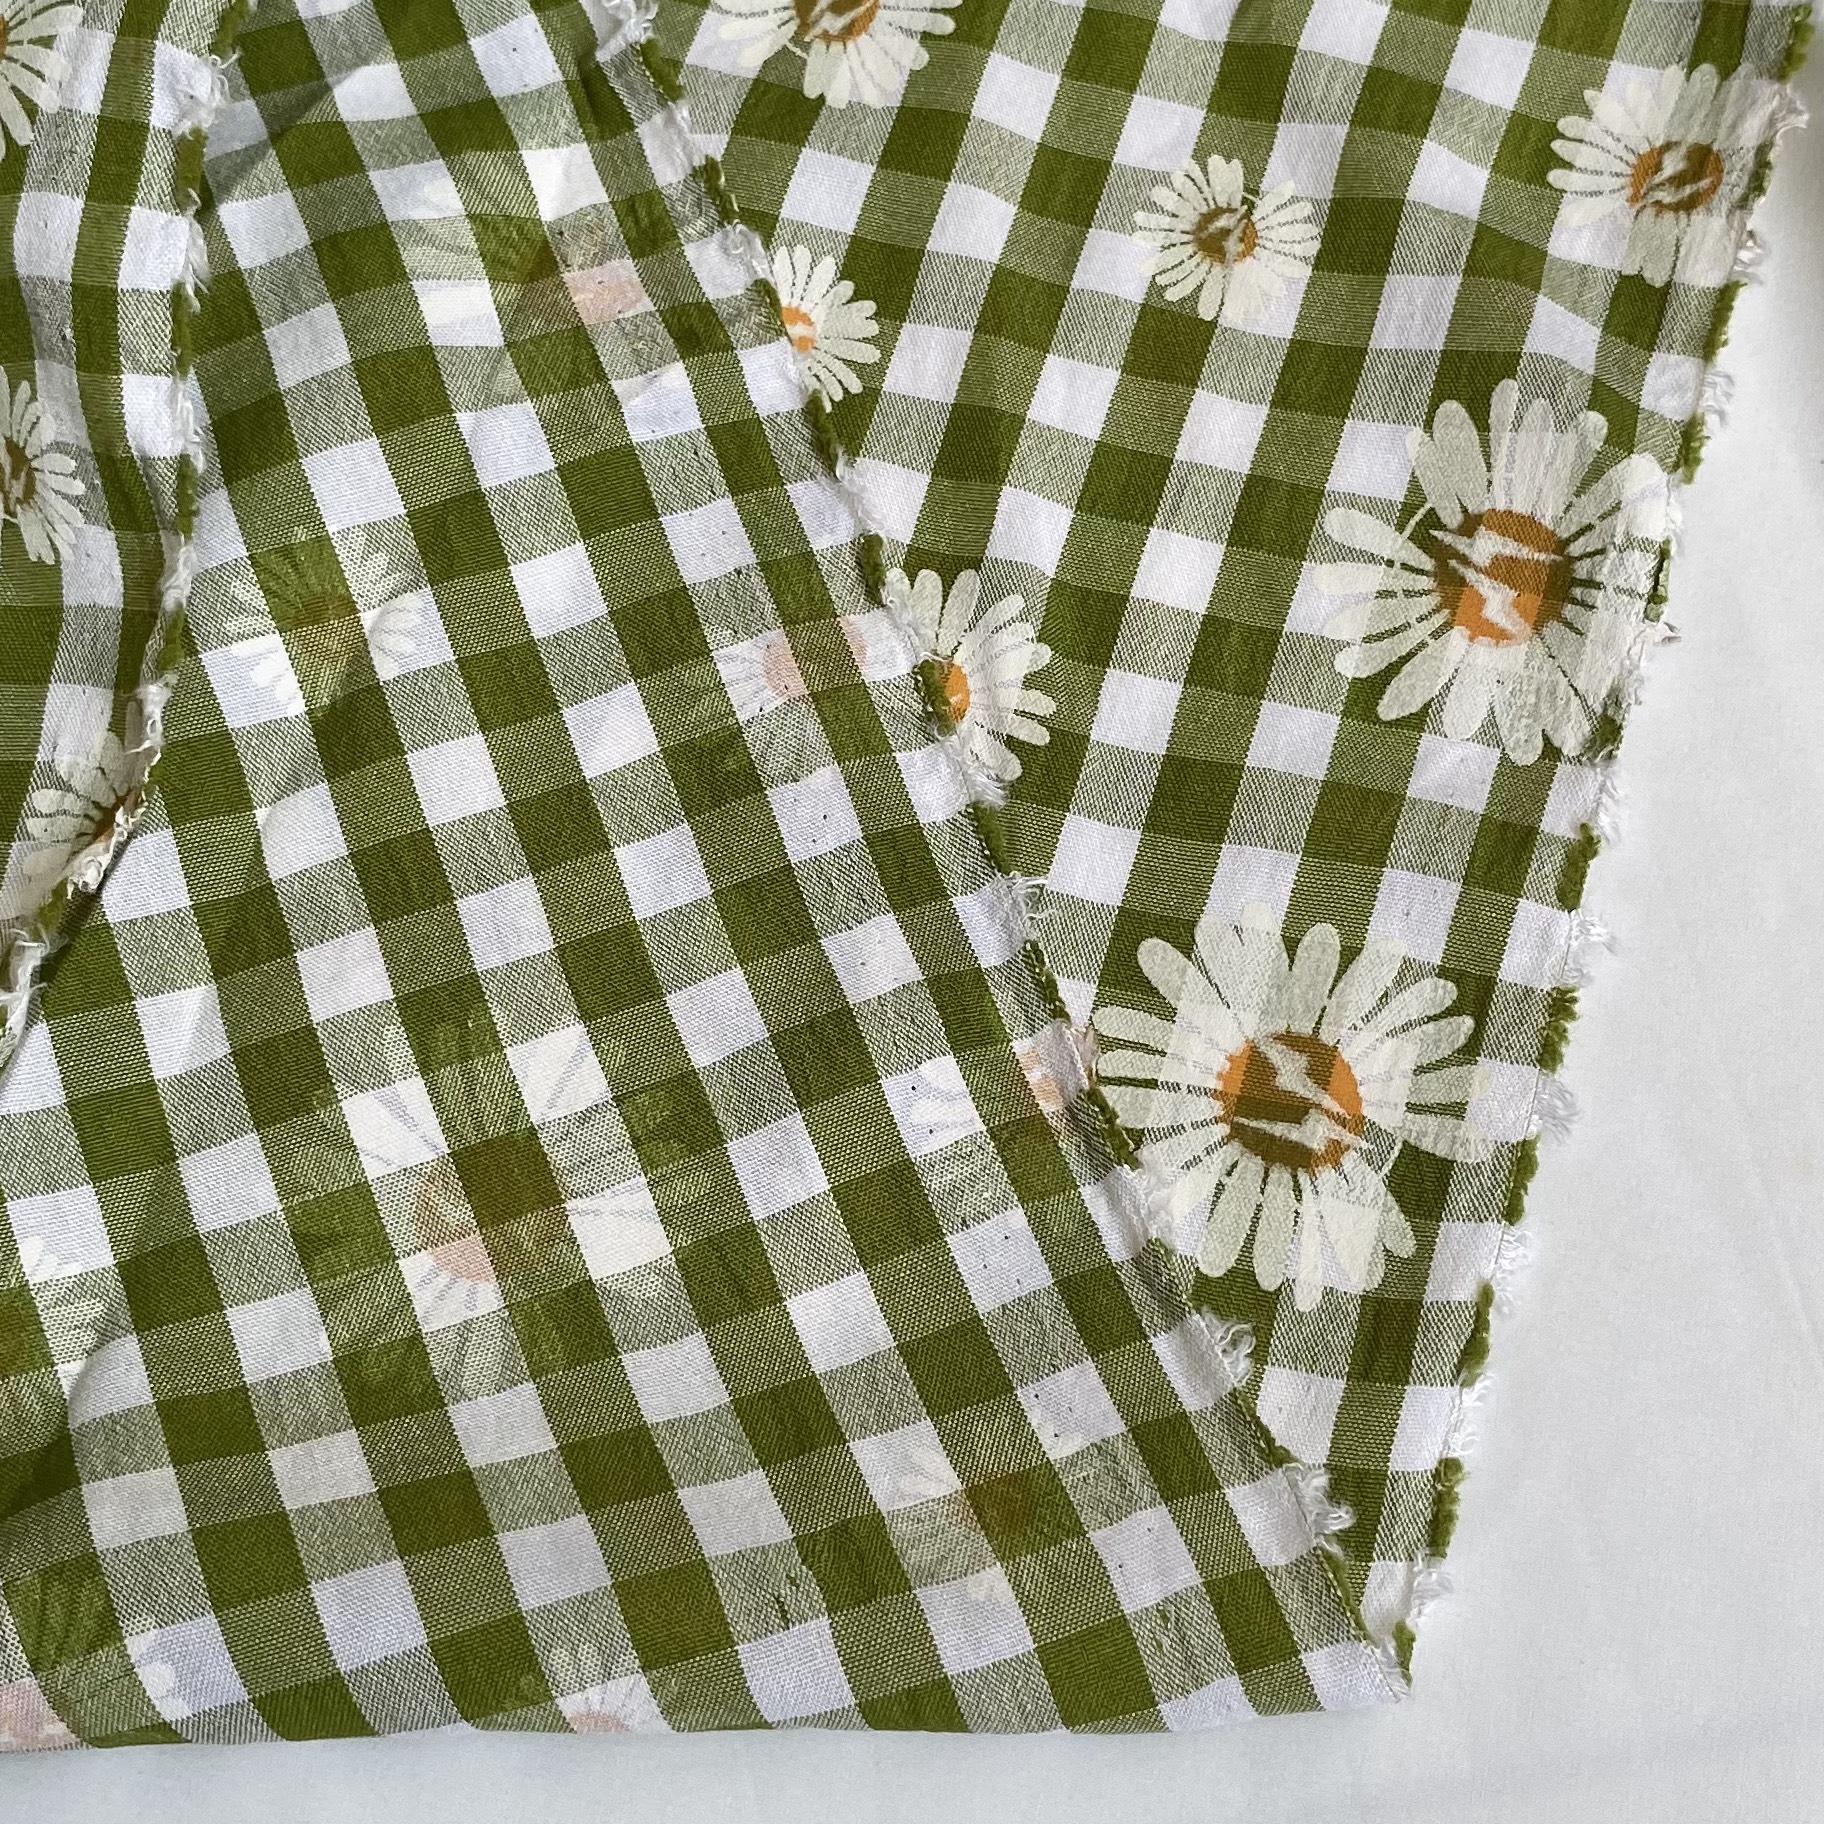 Vải Thô Cotton Pha Xanh Lớn Hoa Cúc Sơn Khổ 1m46 - Không Co Giãn - May Đầm, Áo Kiểu, Đồ Bộ, Đồ Trẻ Em